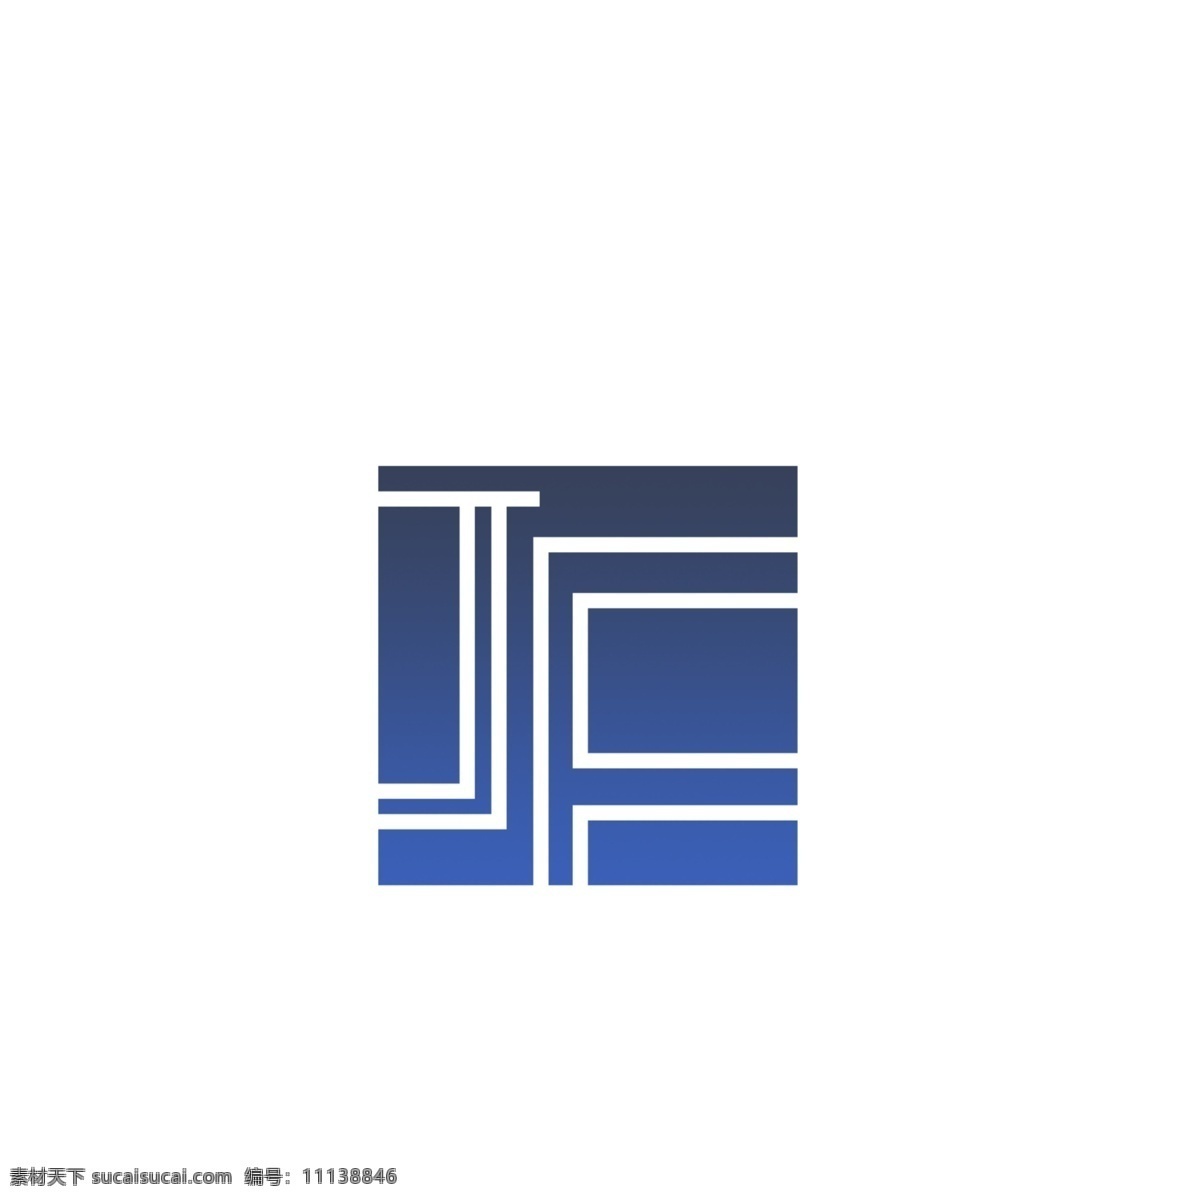 门窗 行业 logo 字母 jf 蓝色 创意 门窗logo 蓝色logo 创意logo logo设计